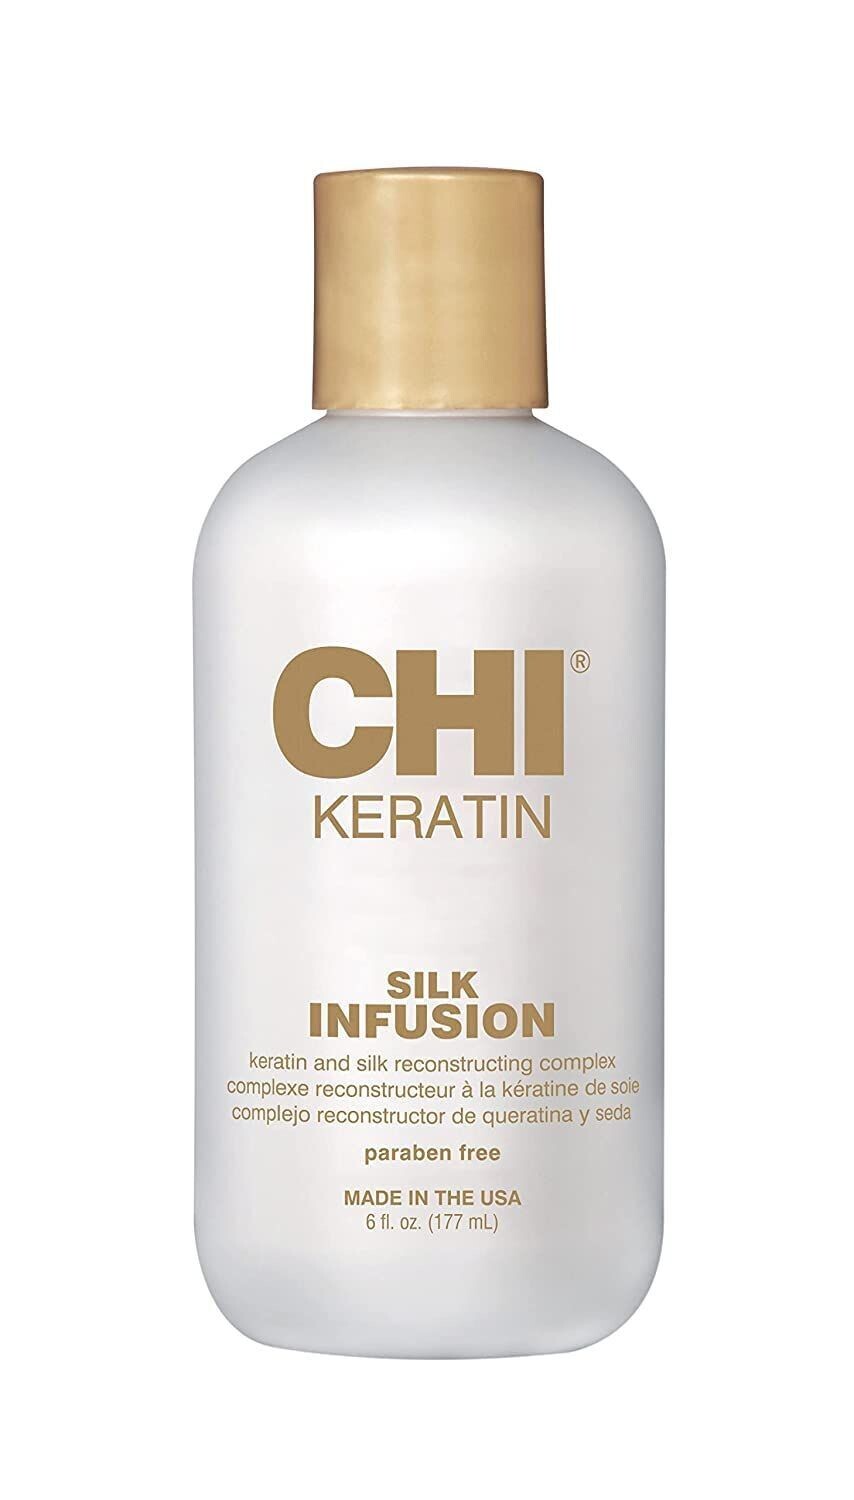 CHI Keratin Silk Infusion spēcīgs keratīna un zīda komplekss sausu un bojātu matu atjaunošanai 177ml